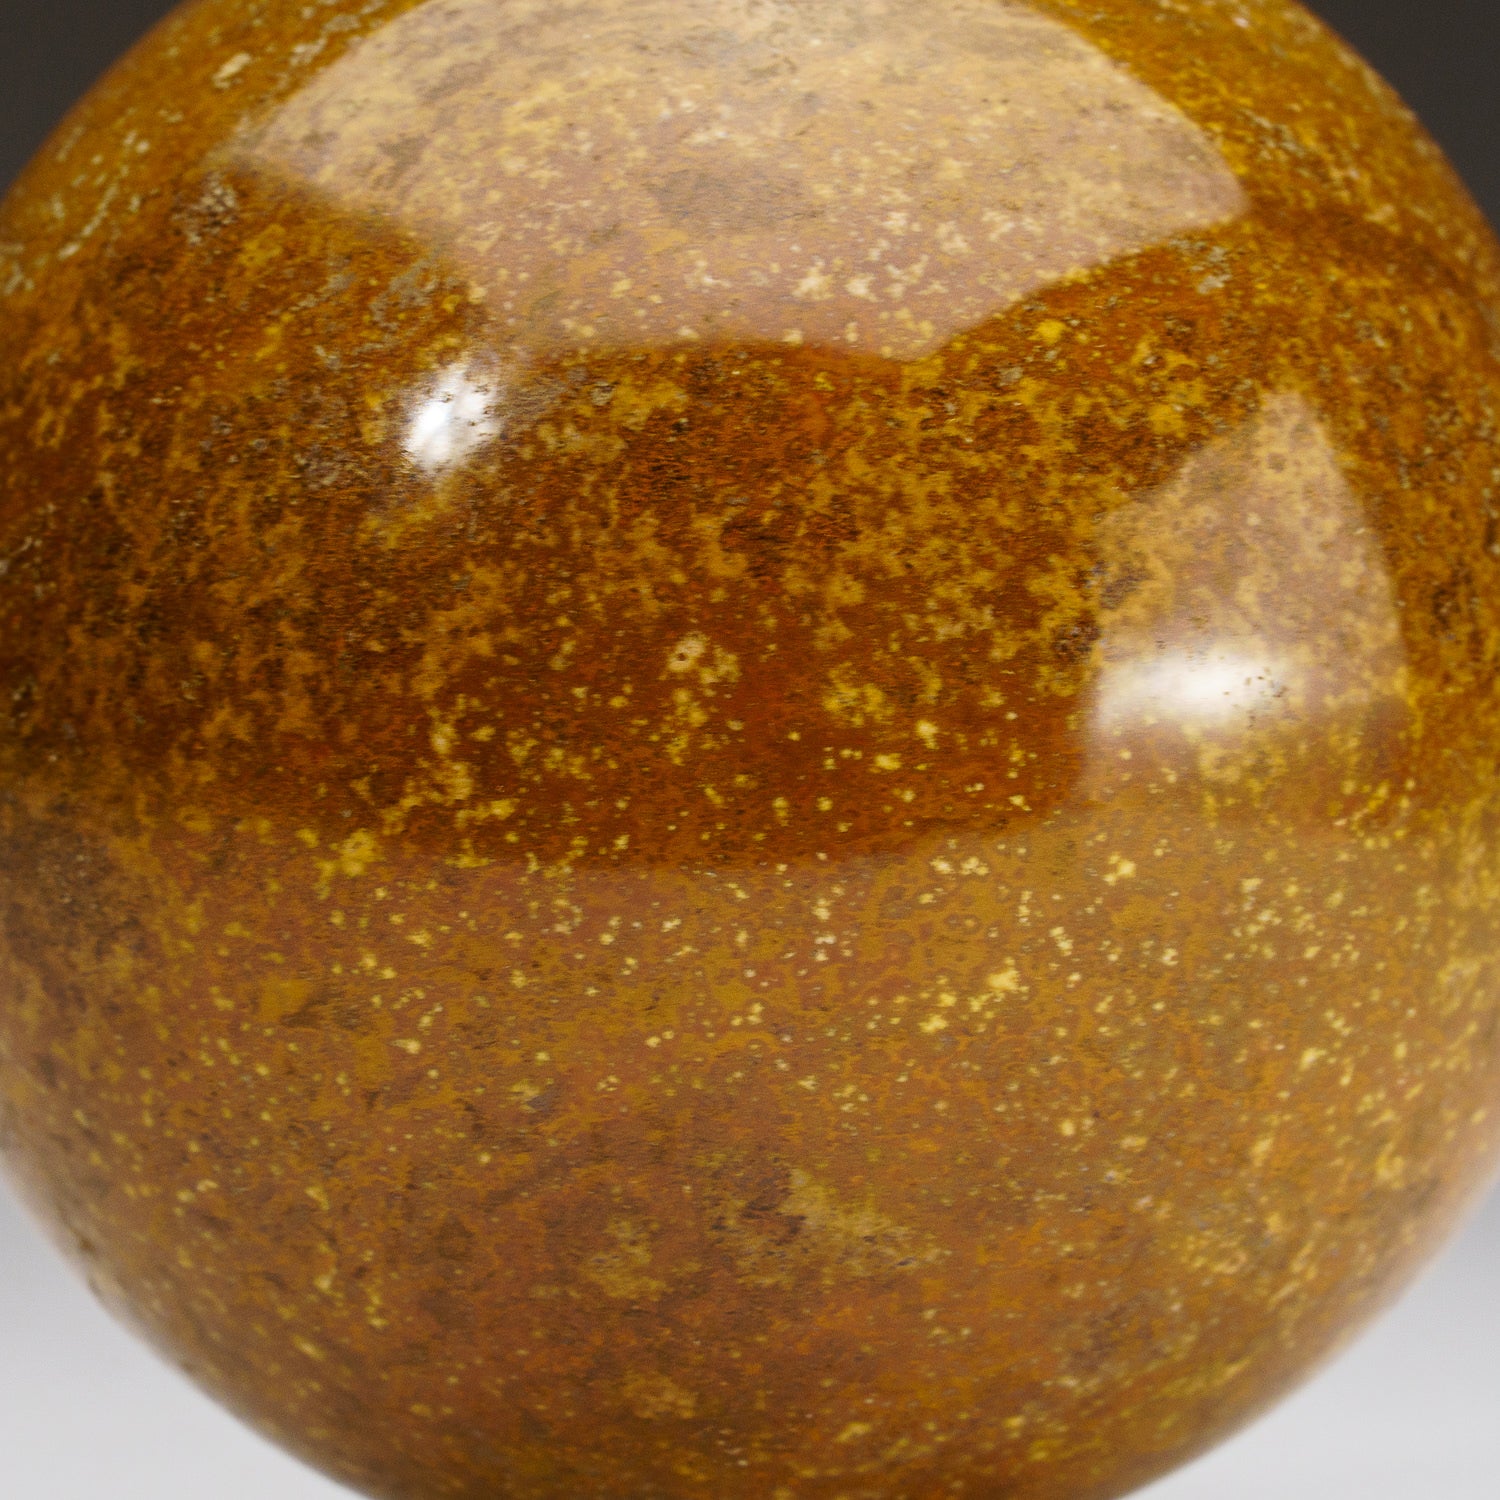 Genuine Polished Ocean Jasper Sphere (2.4 lbs)